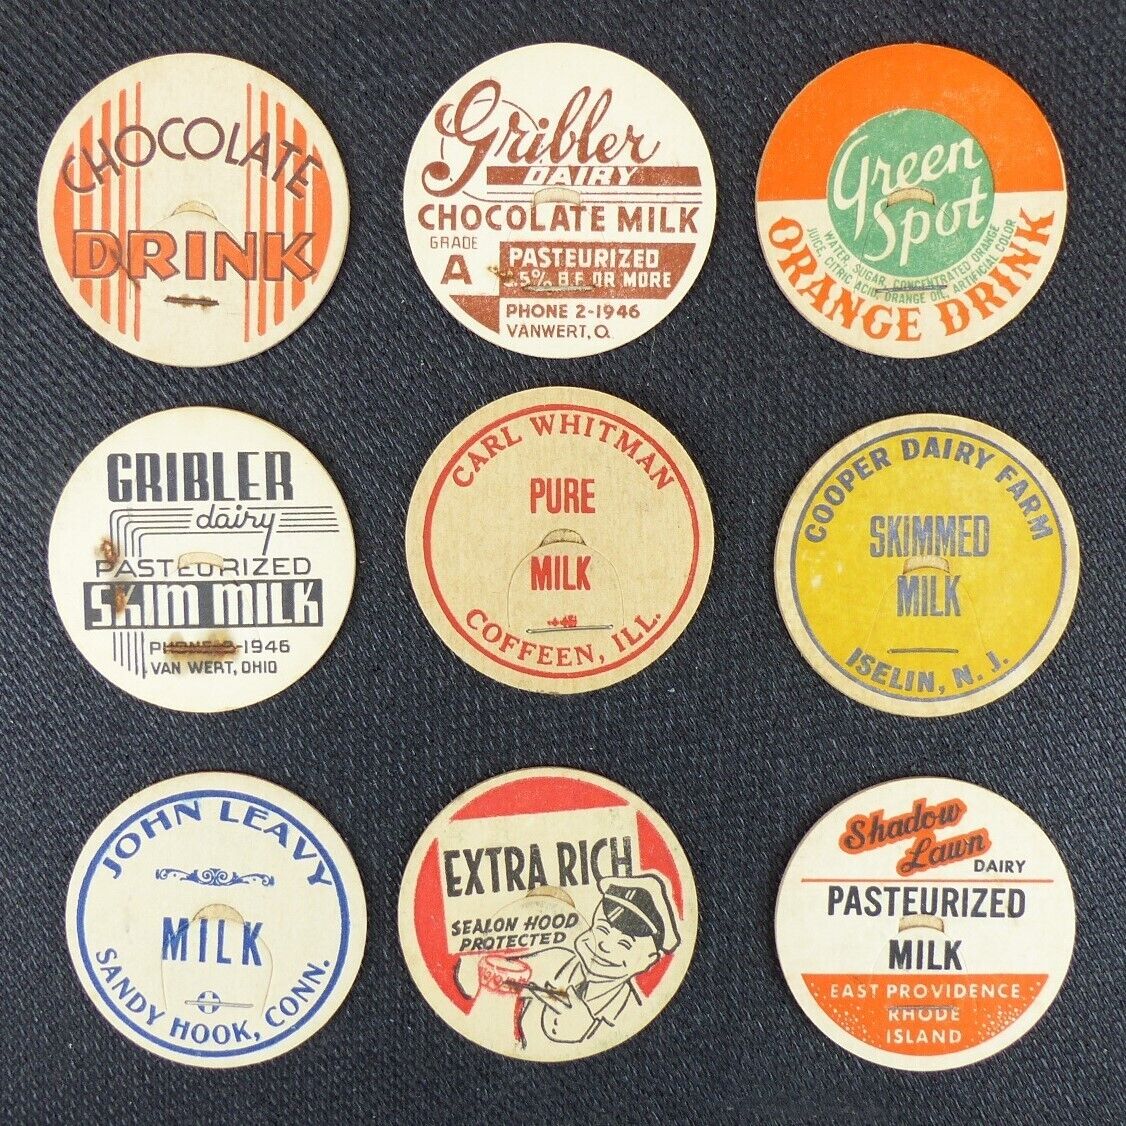 Lot of 9 Vintage Milk Bottle Cap Gribler, Cooper, John Leavy Dairy Milk Caps